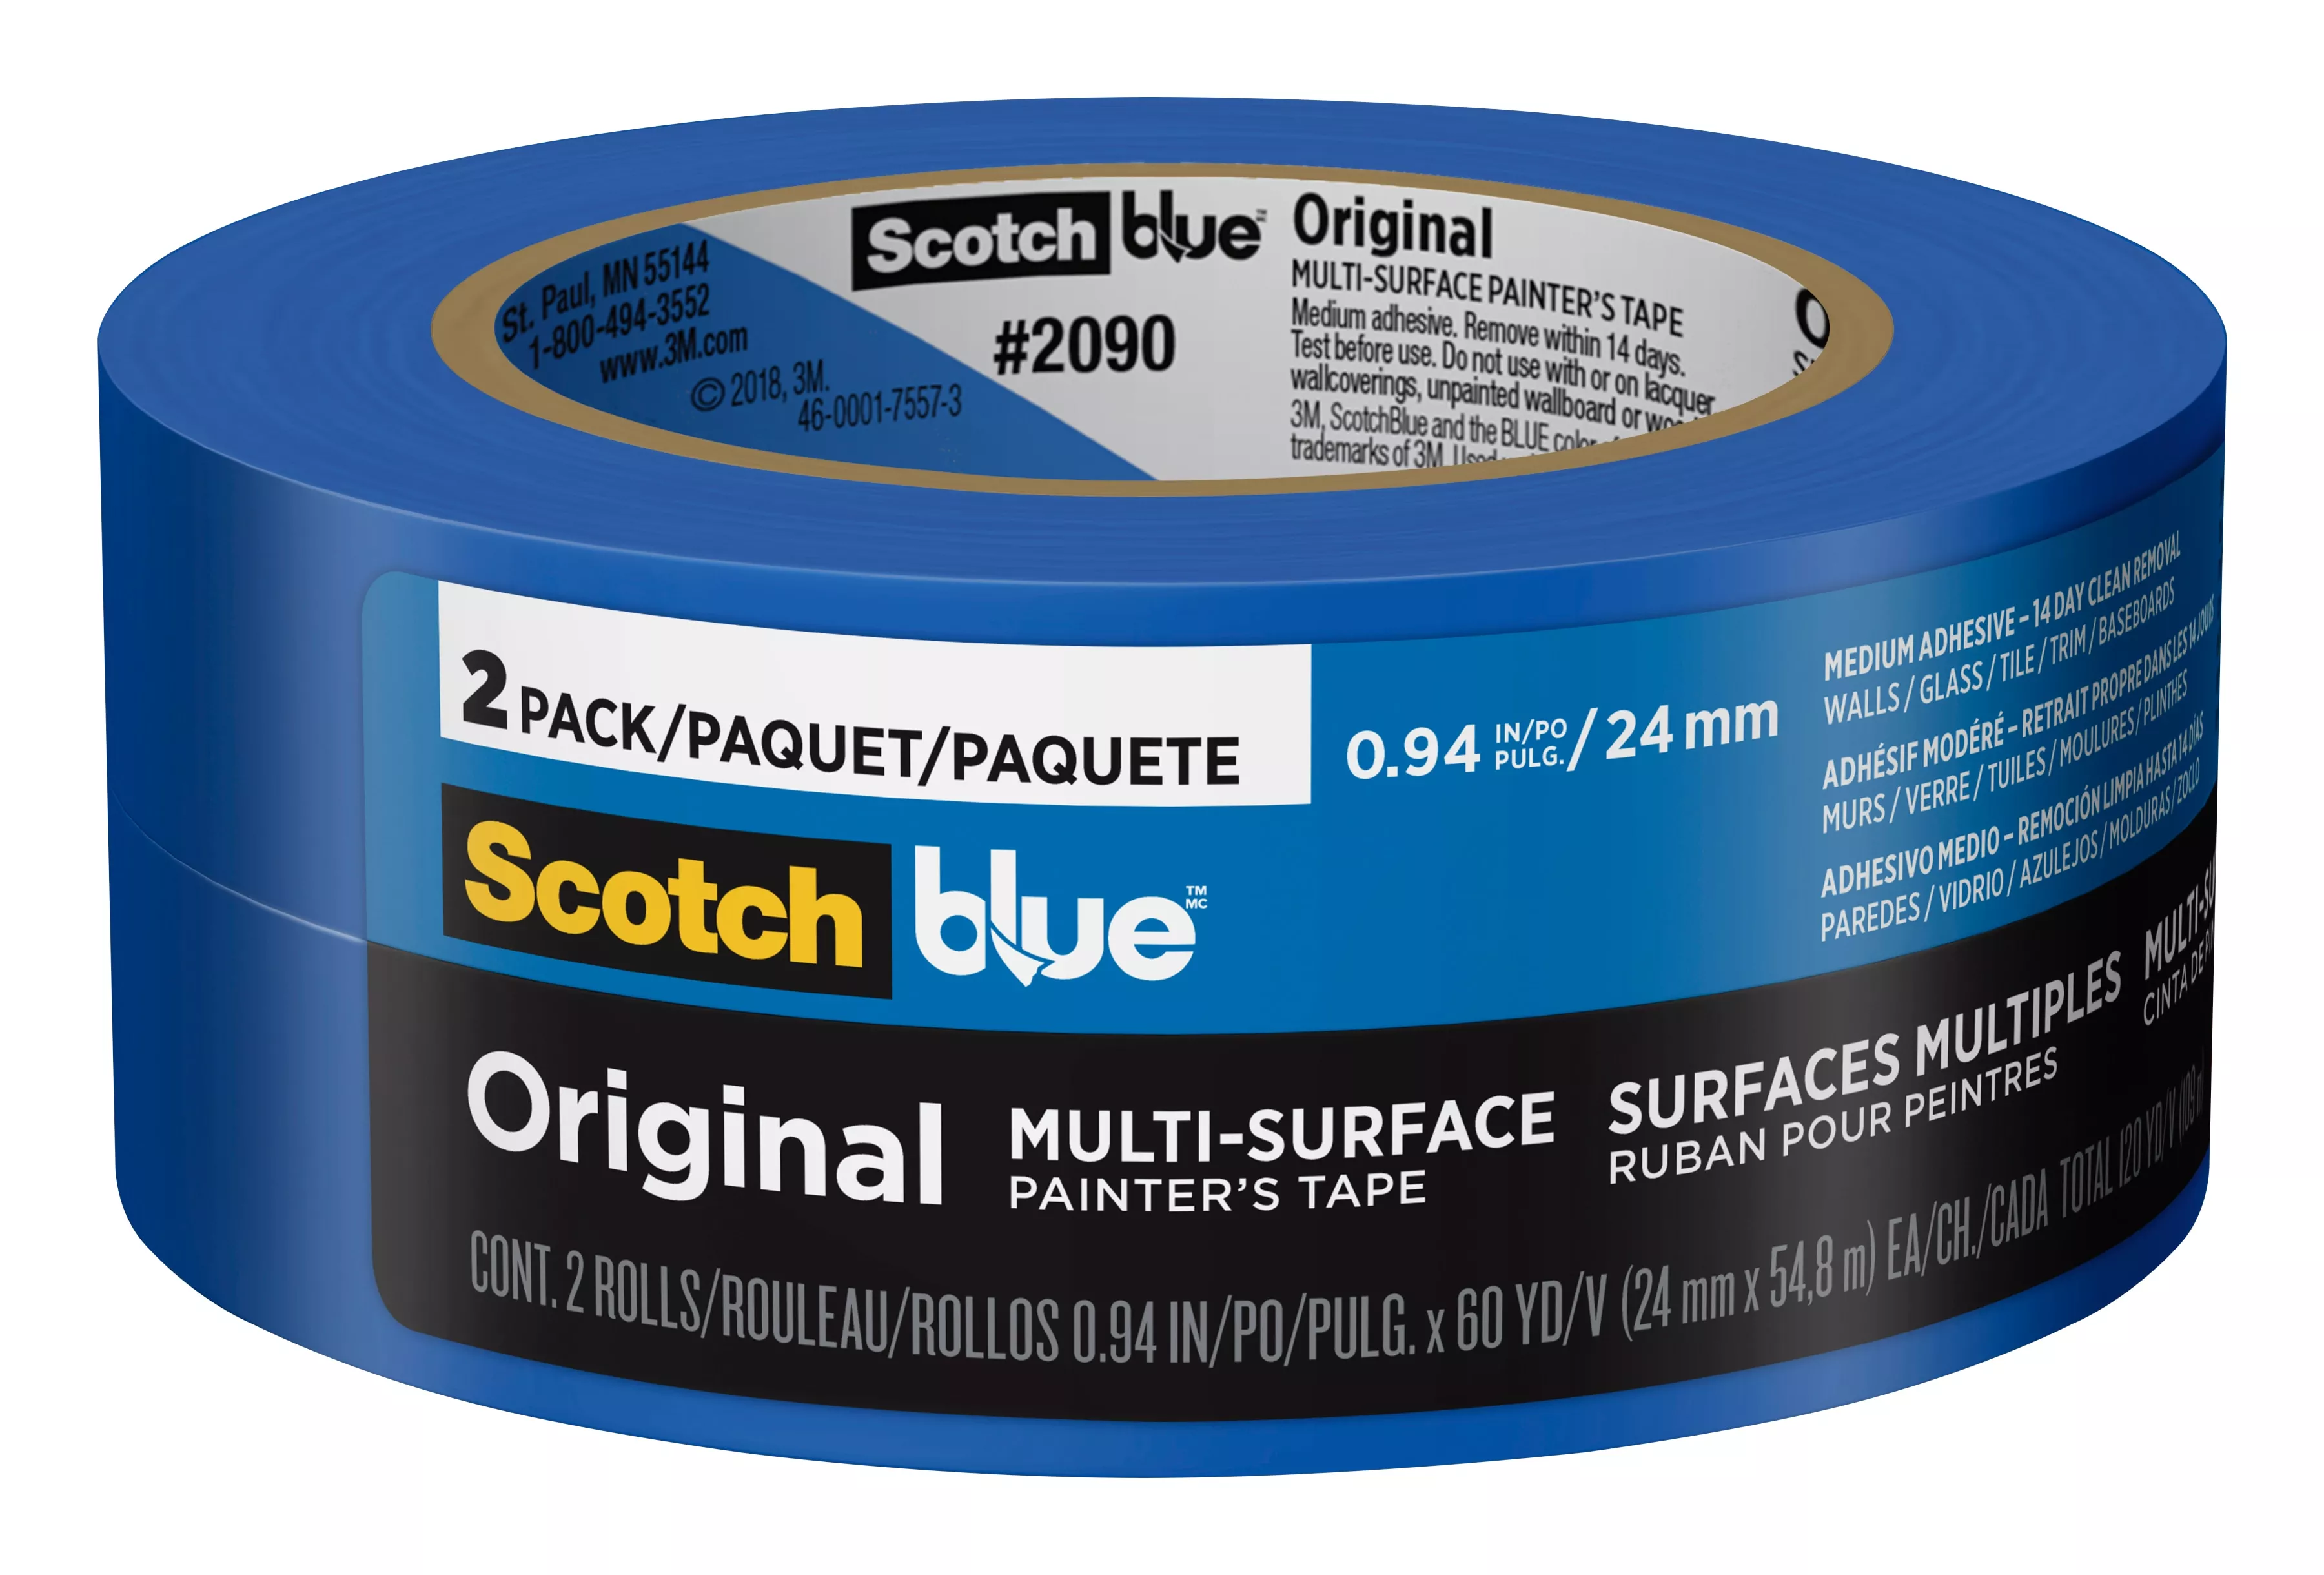 SKU 7100185553 | ScotchBlue™ Original Painter's Tape 2090-24CC2